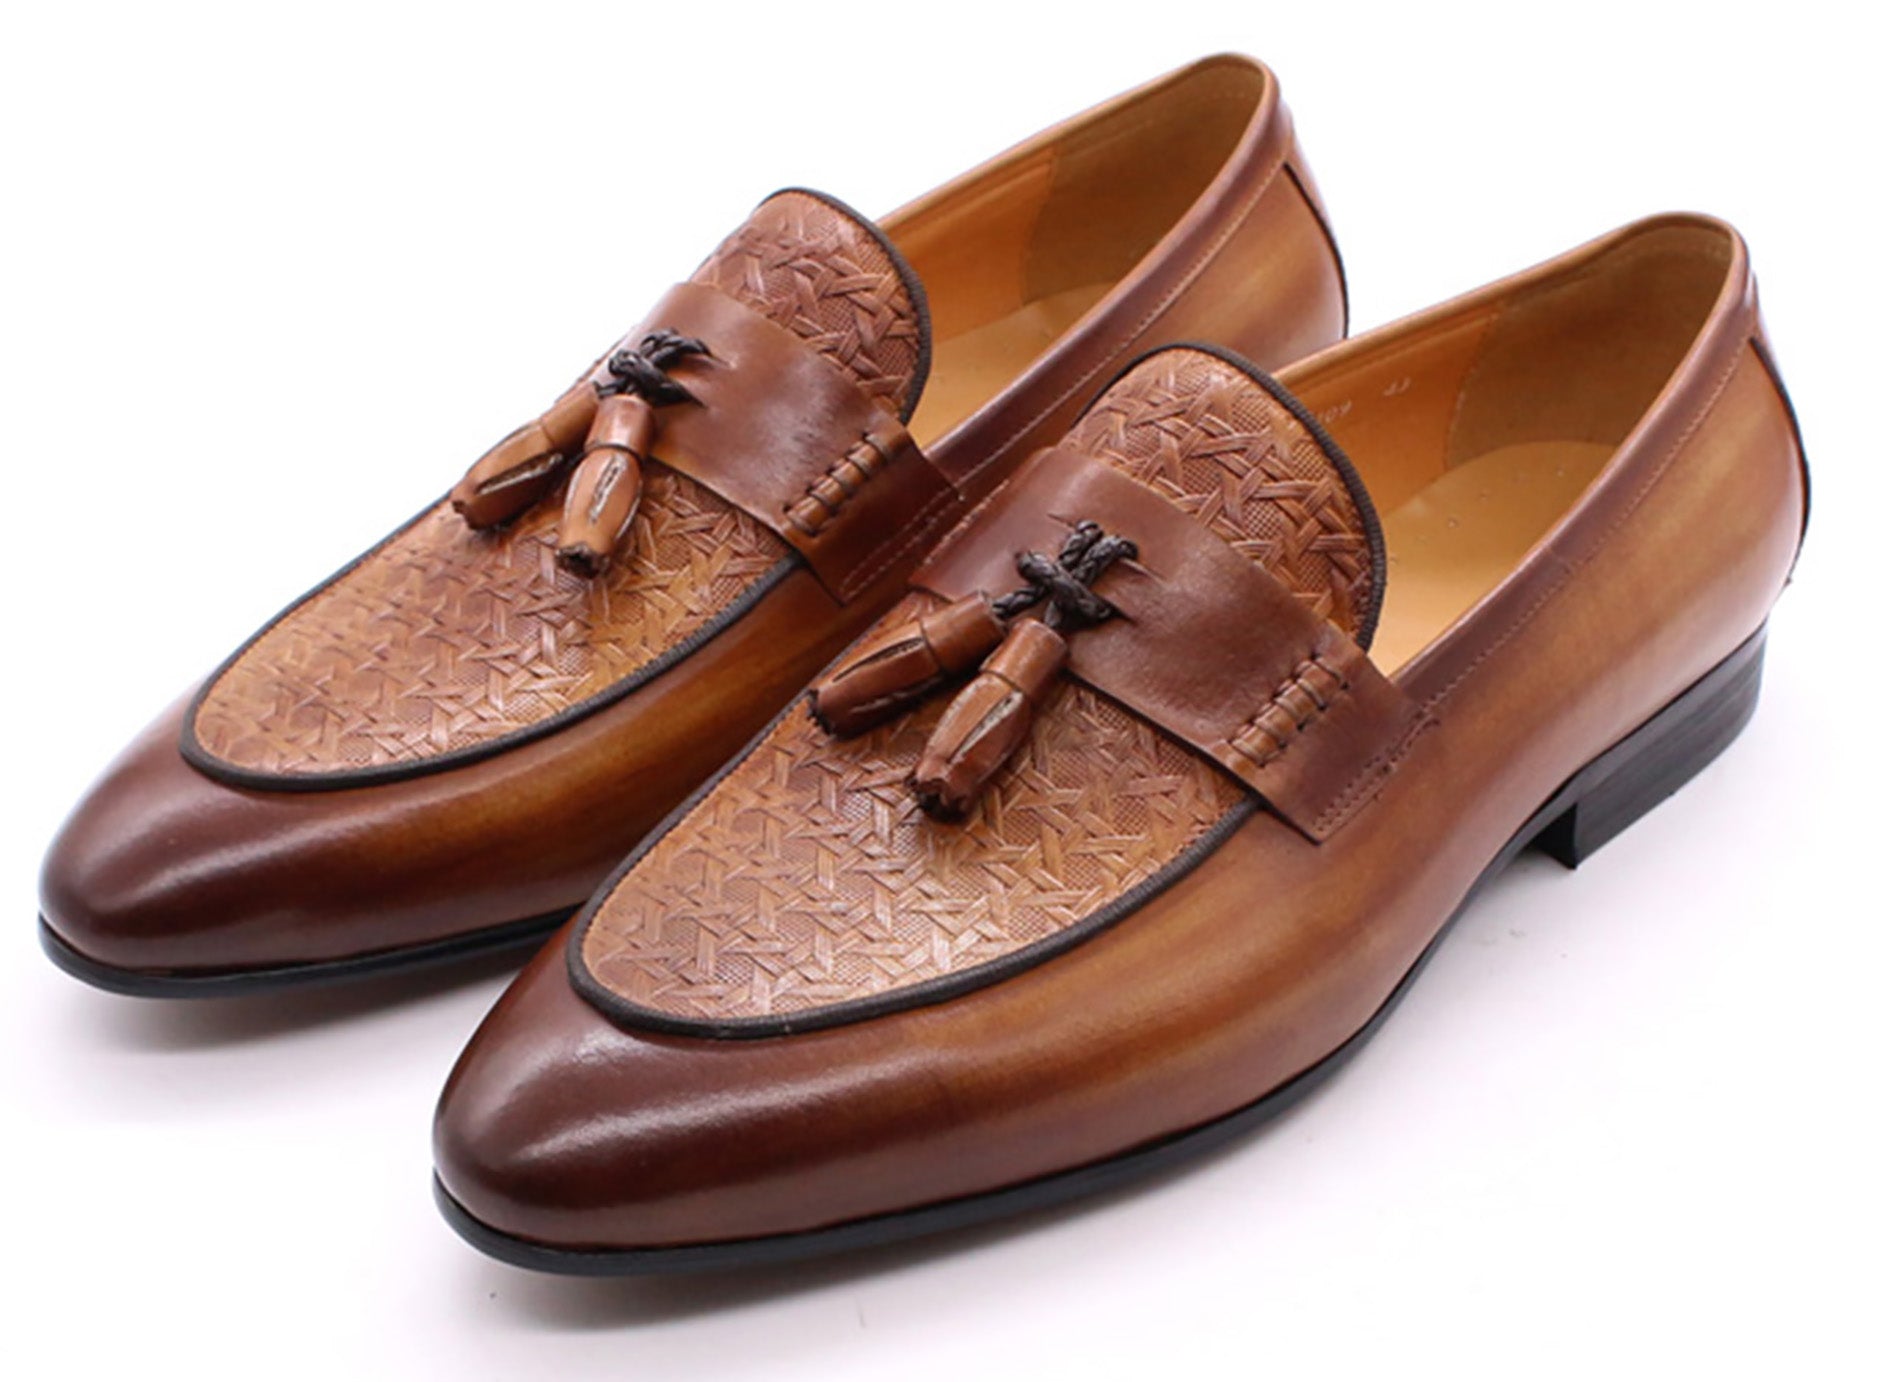 Men's Formal Dress Silp On Tassel Loafers